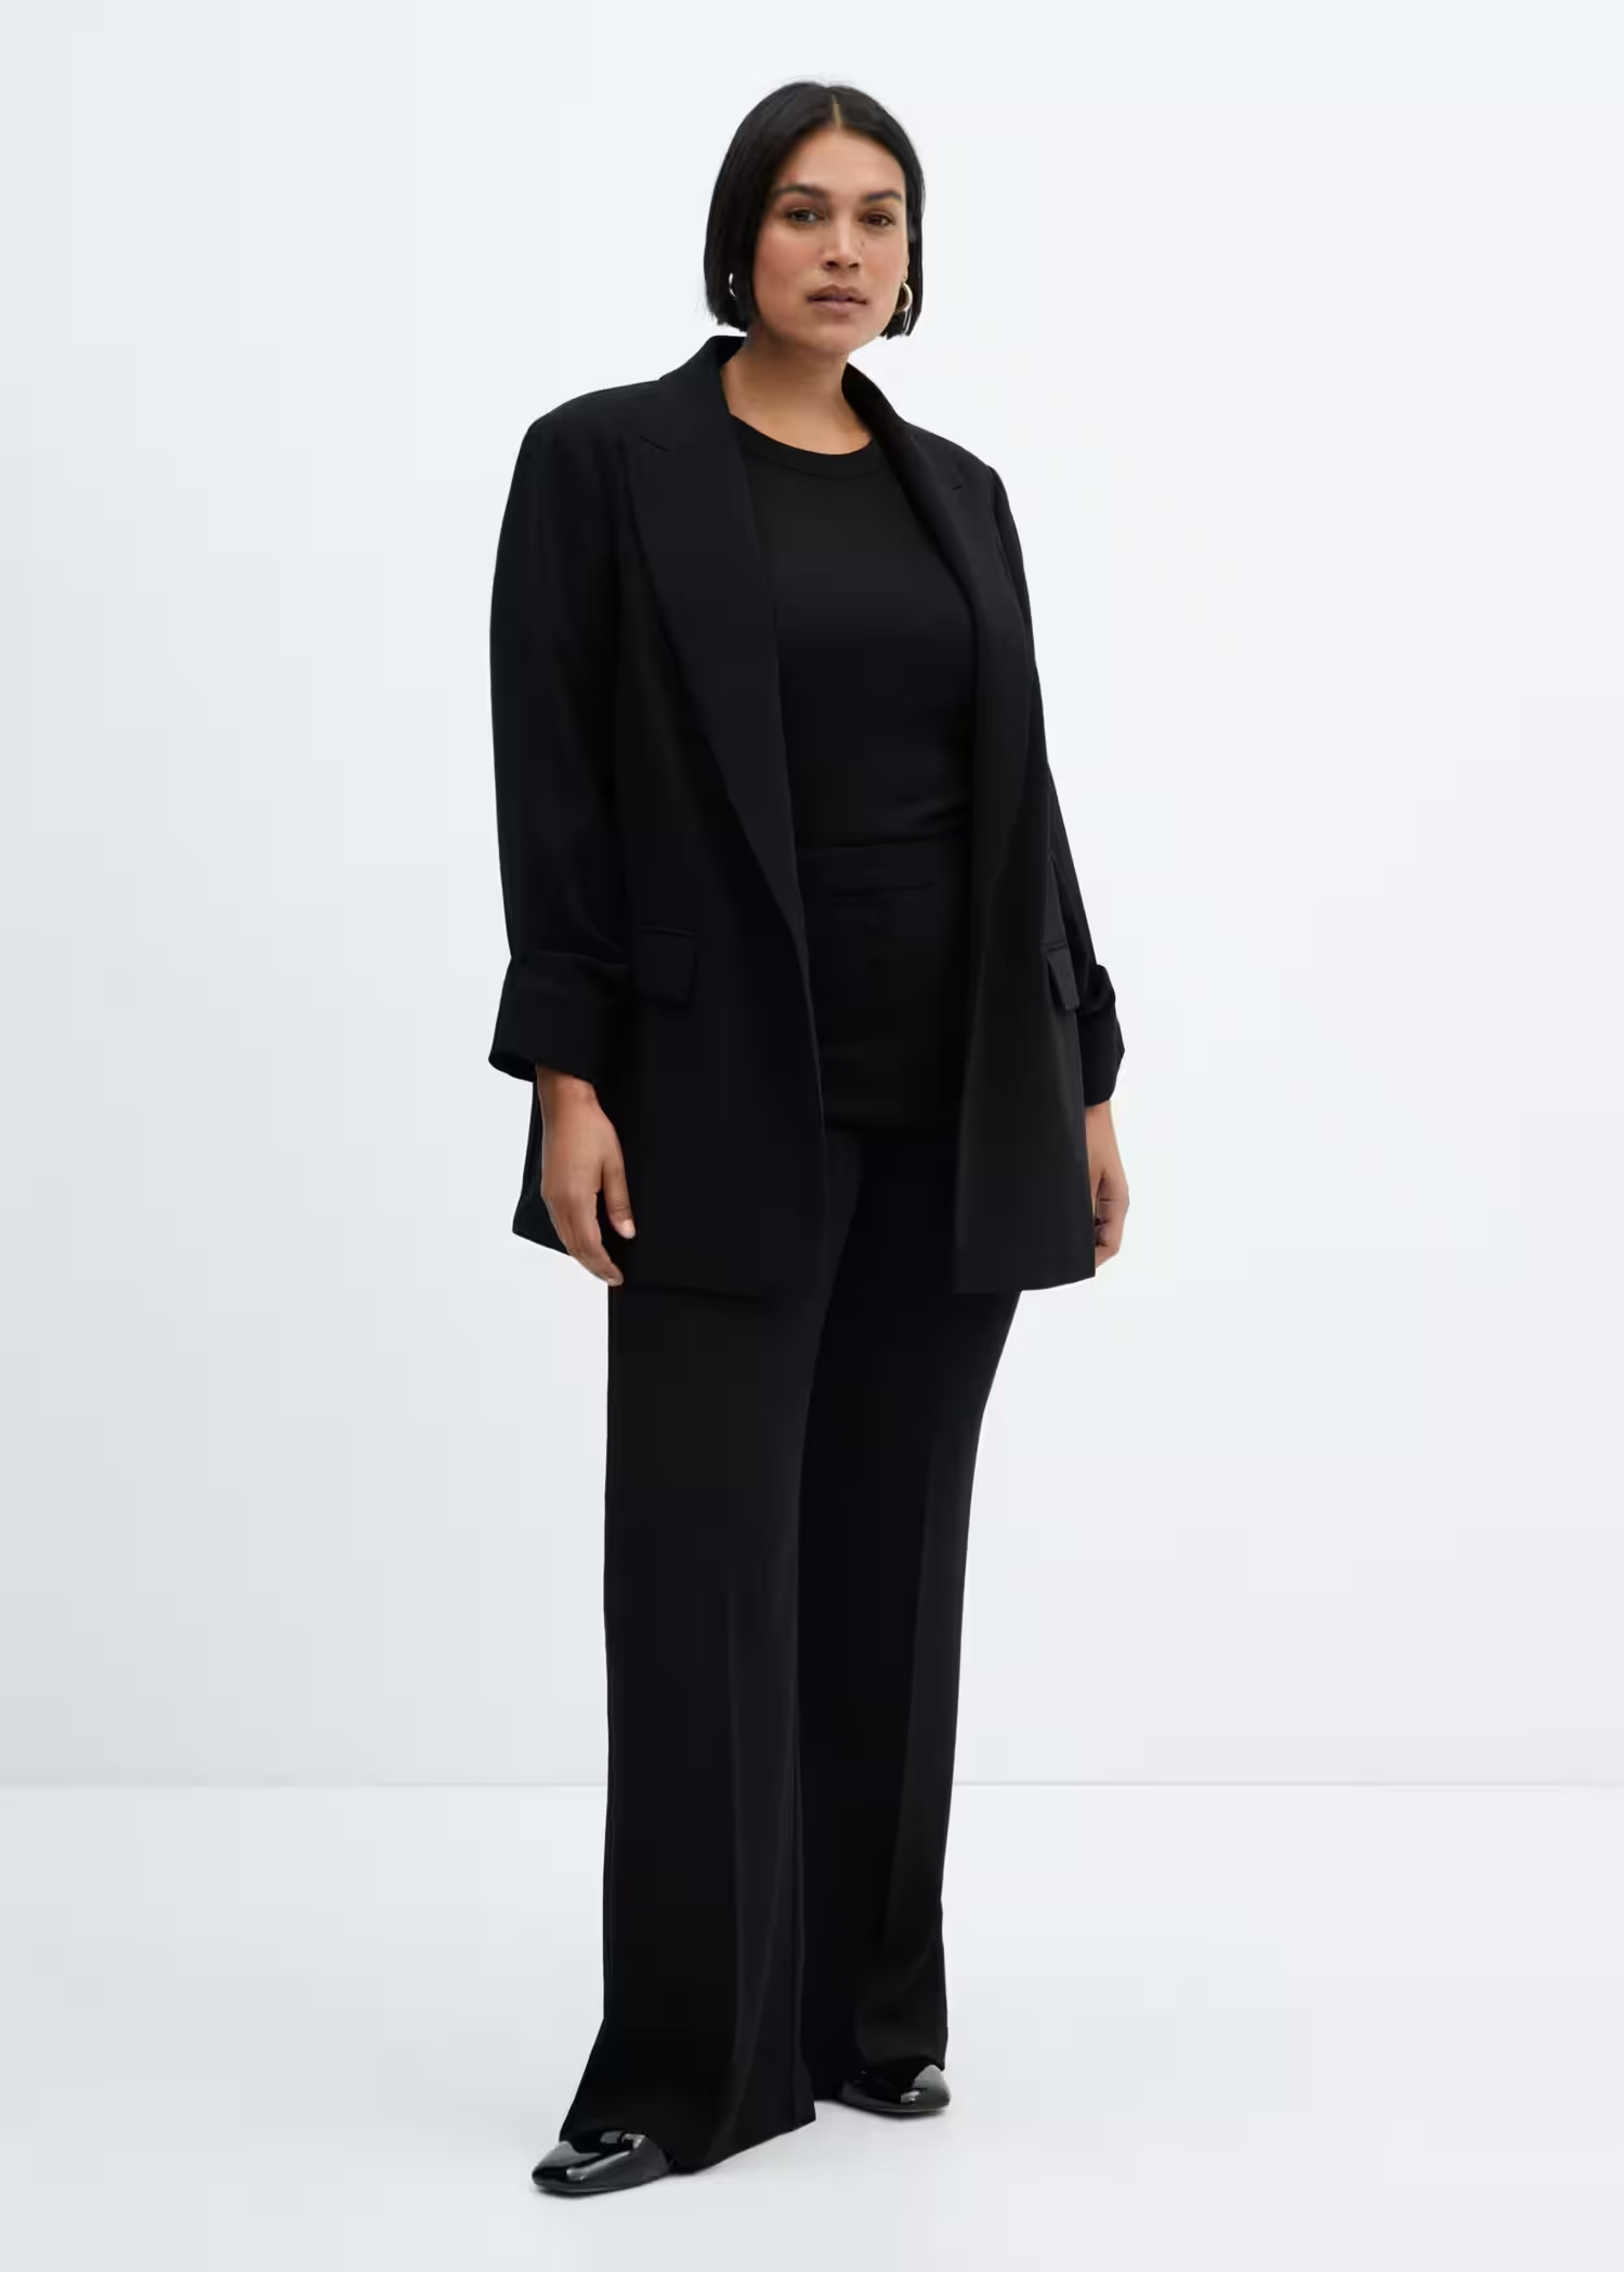 Mujer llevando un traje de chaqueta negro de estilo minimalista